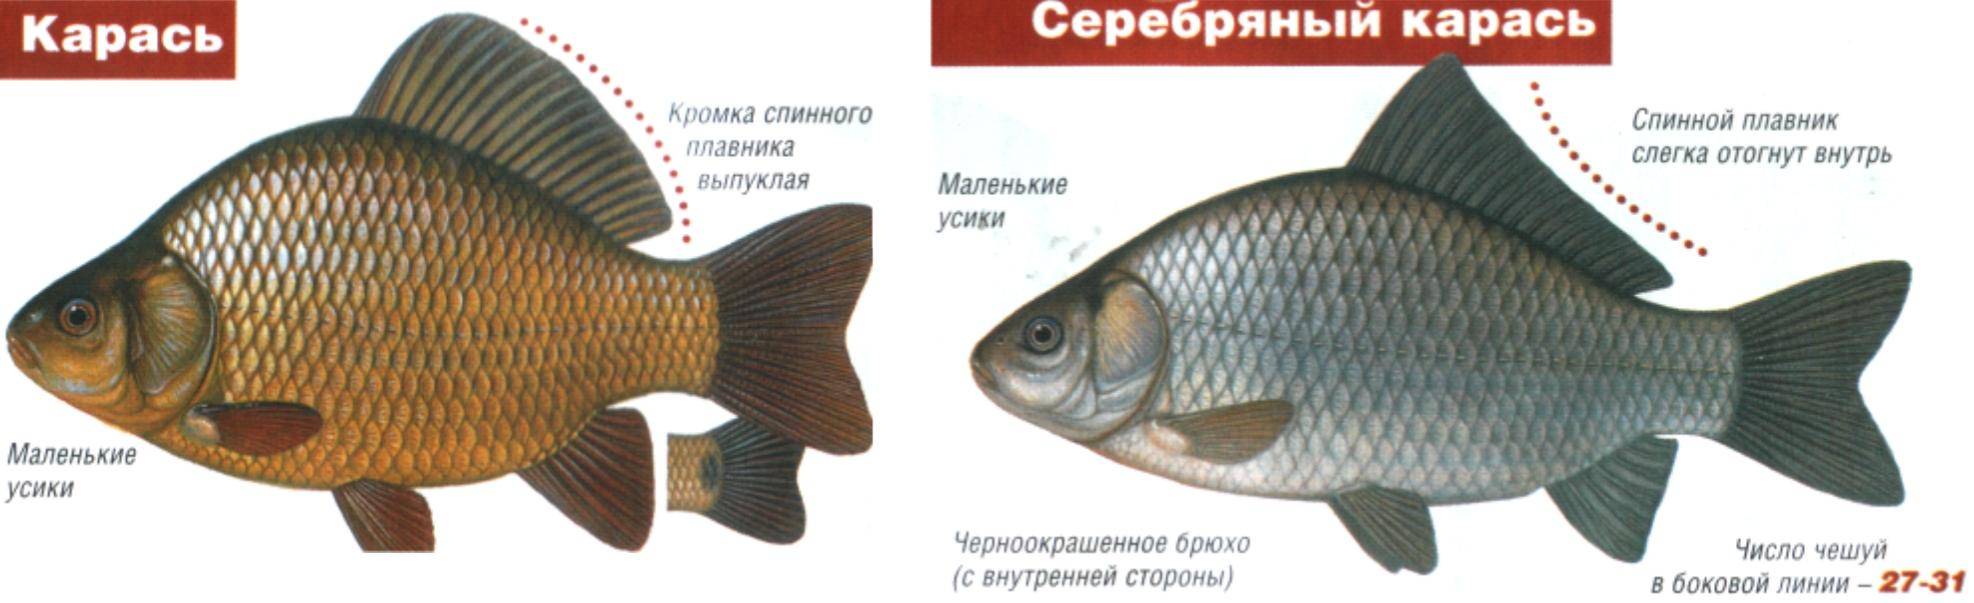 Сибас: описание рыбы, калорийность, места обитания, нерест, способы ловли и образ жизни